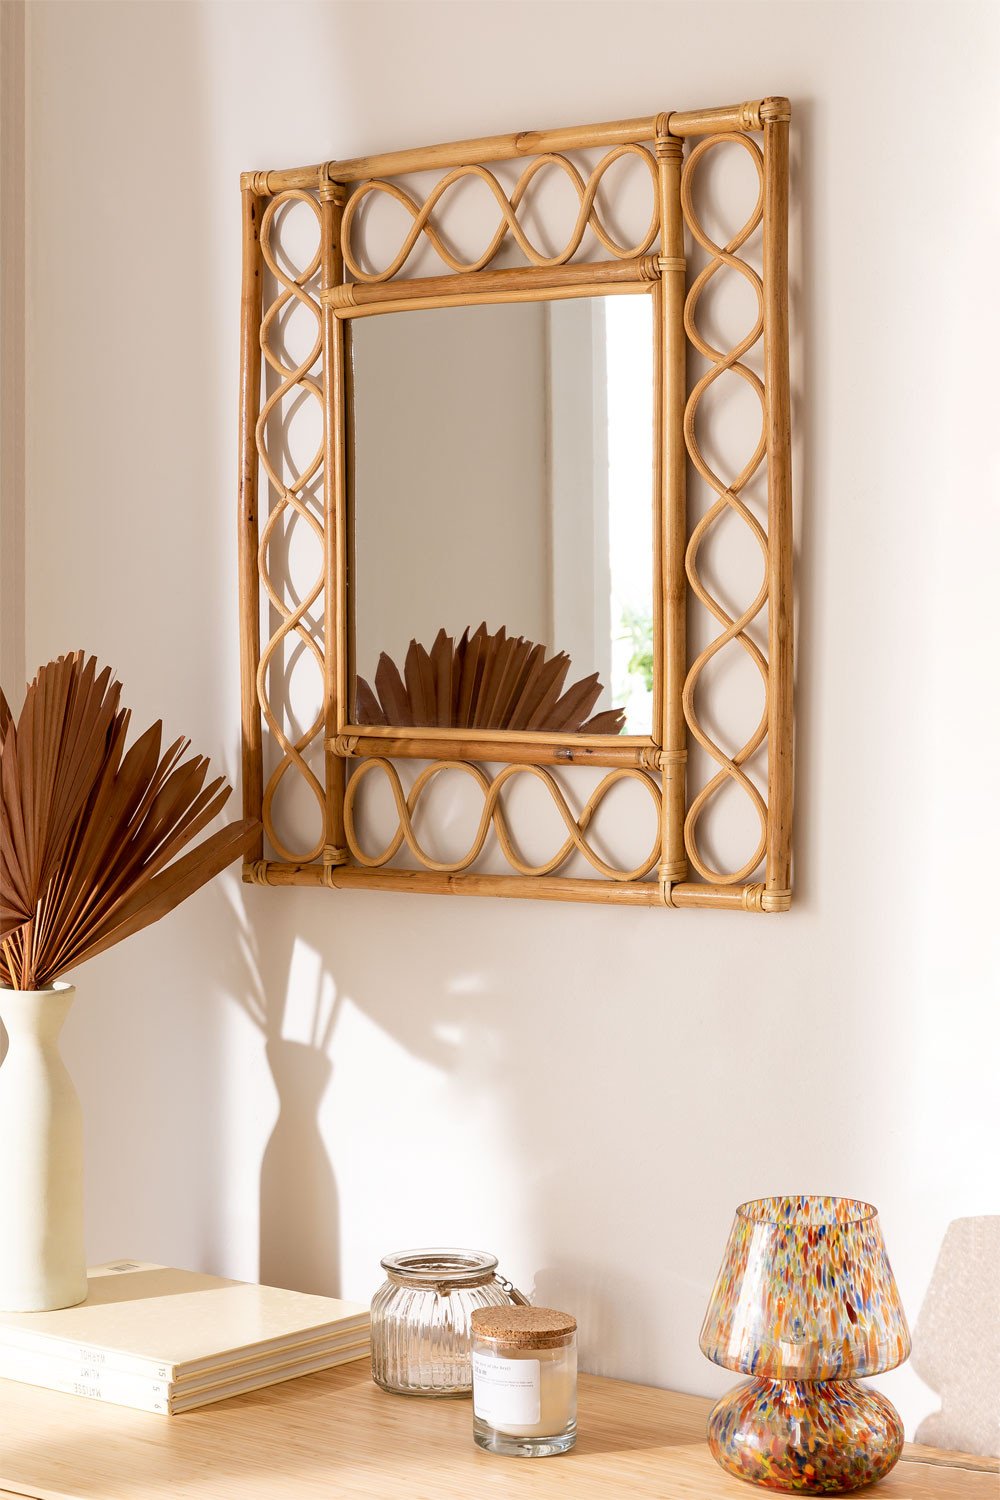 QUOAOT Espejo de pared arqueado, espejo de ratán de 24 x 16 pulgadas para  pared, marco de ratán, espejo bohemio para casa de campo, dormitorio, sala